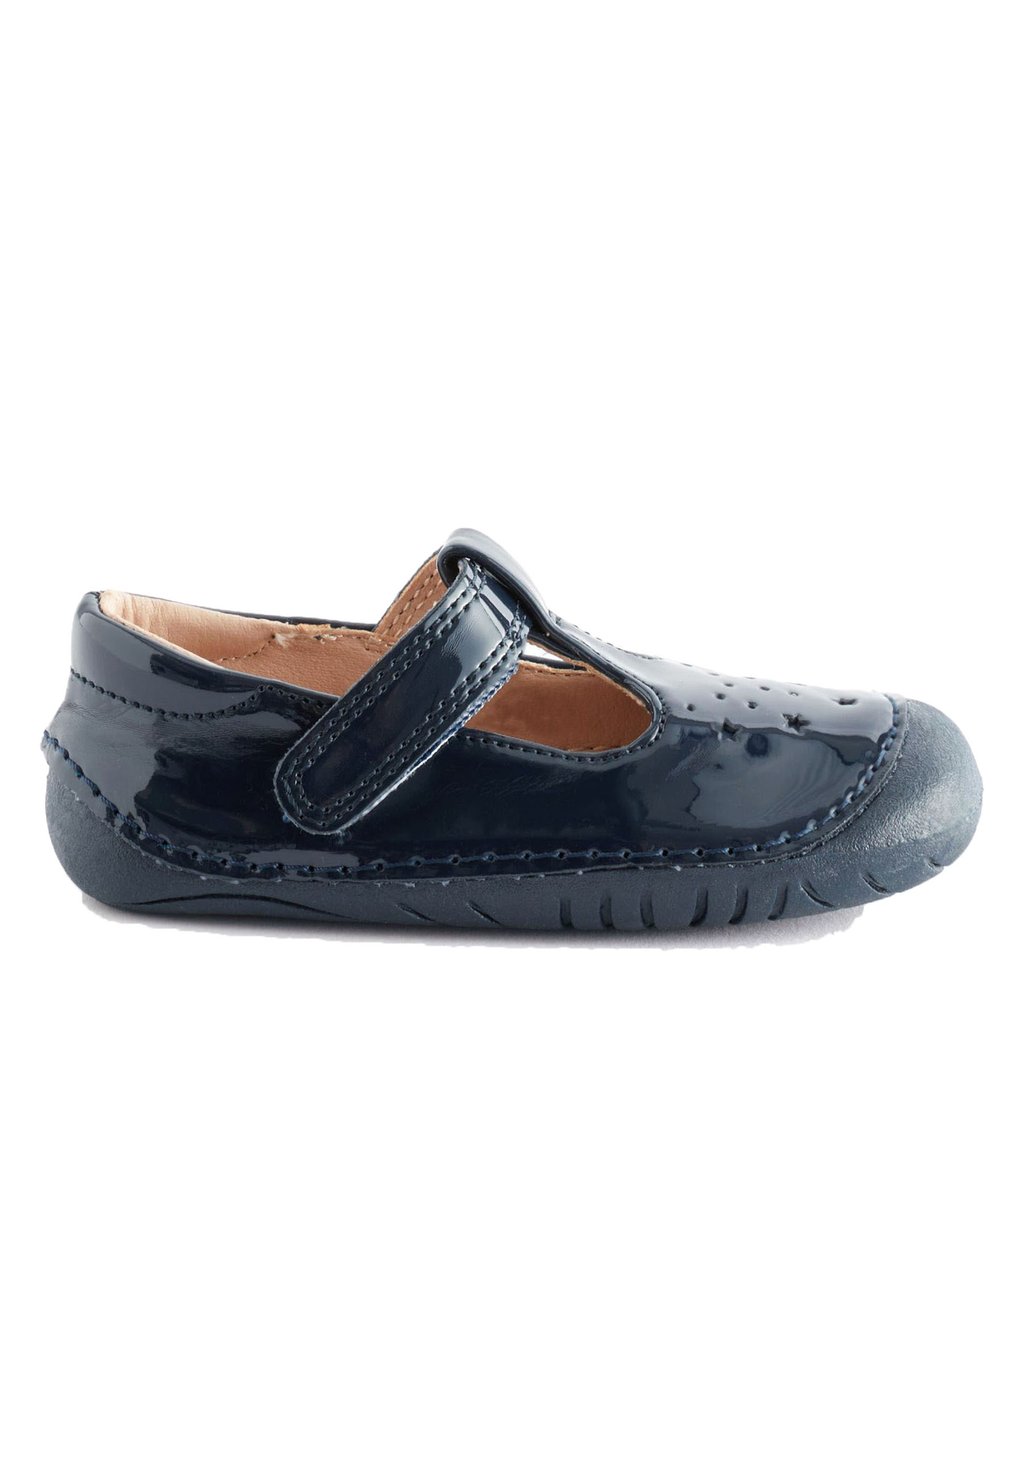 Обувь для ползания CRAWLER T BAR WIDE FIT G Next, цвет navy blue patent